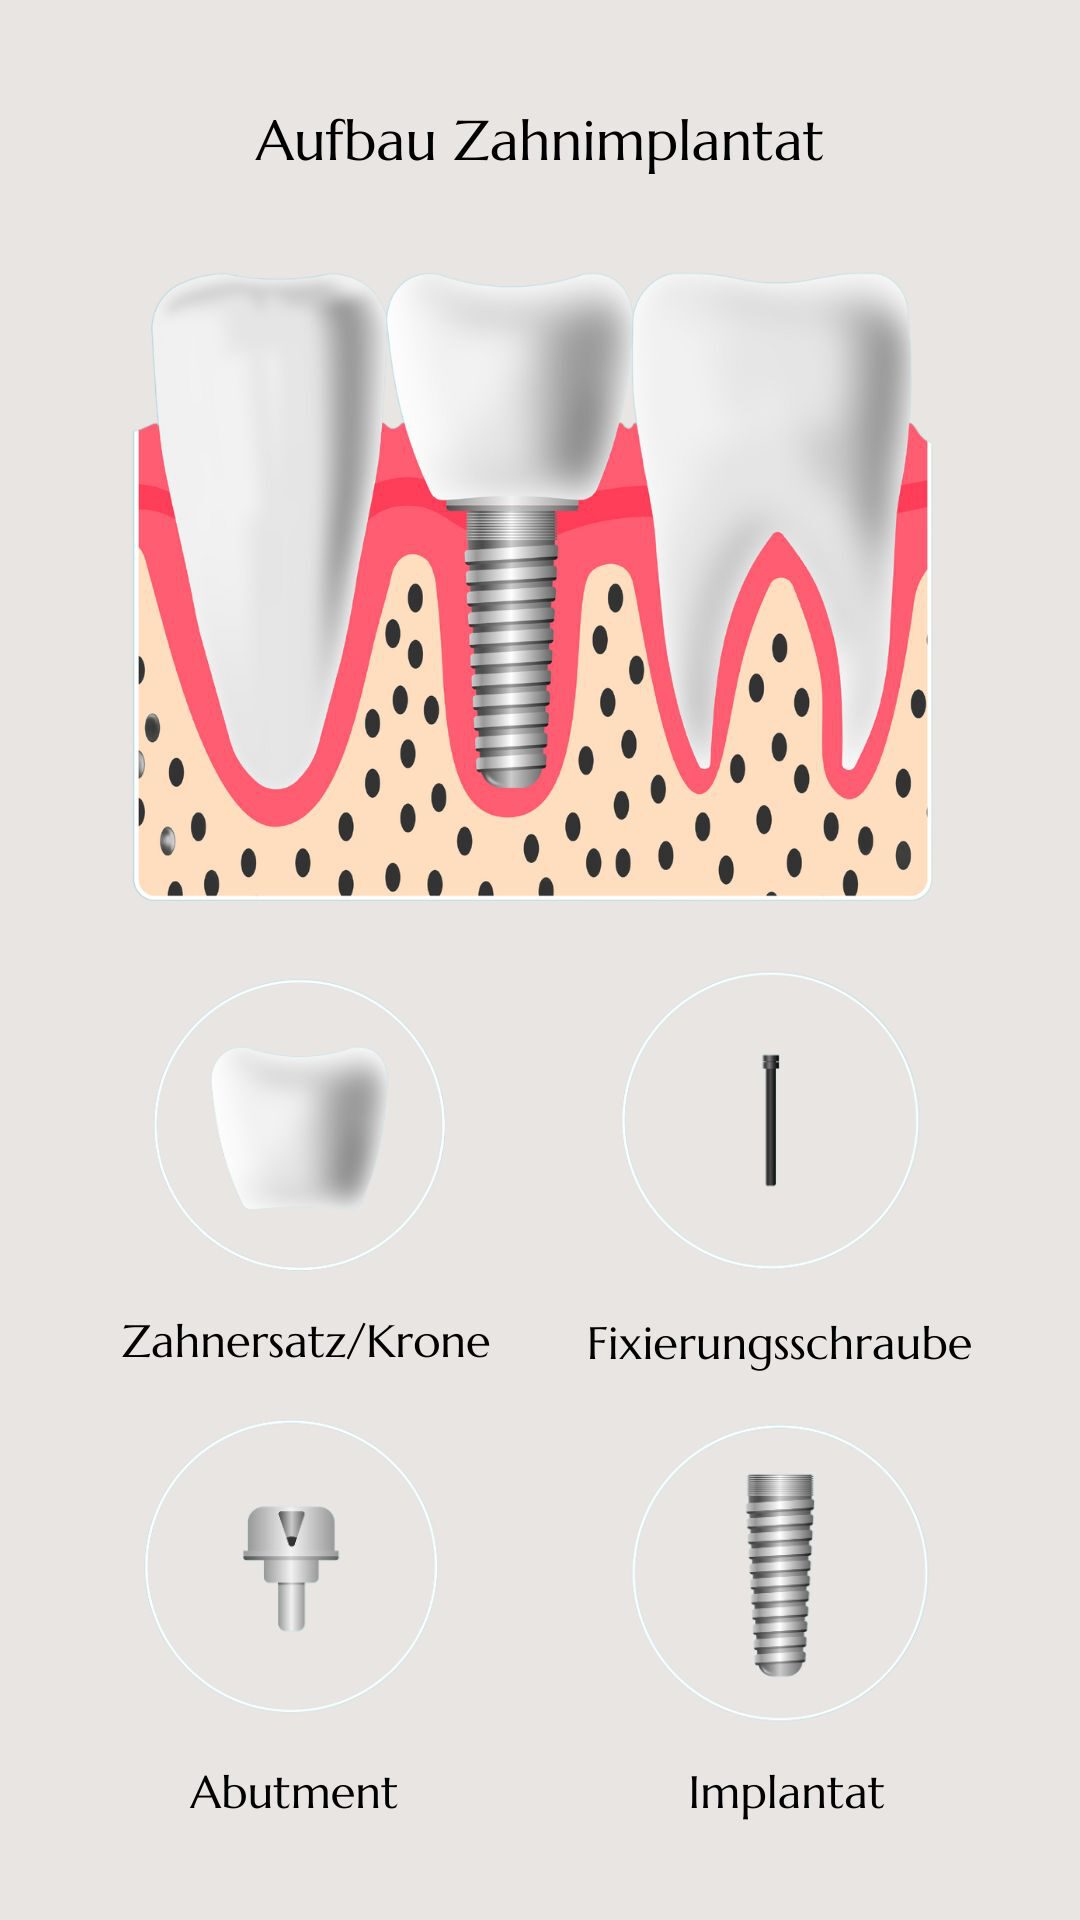 Illustration eines Zahnimplantats, das die einzelnen Komponenten zeigt: Implantat, Abutment, Fixierungsschraube und Zahnersatz/Krone.